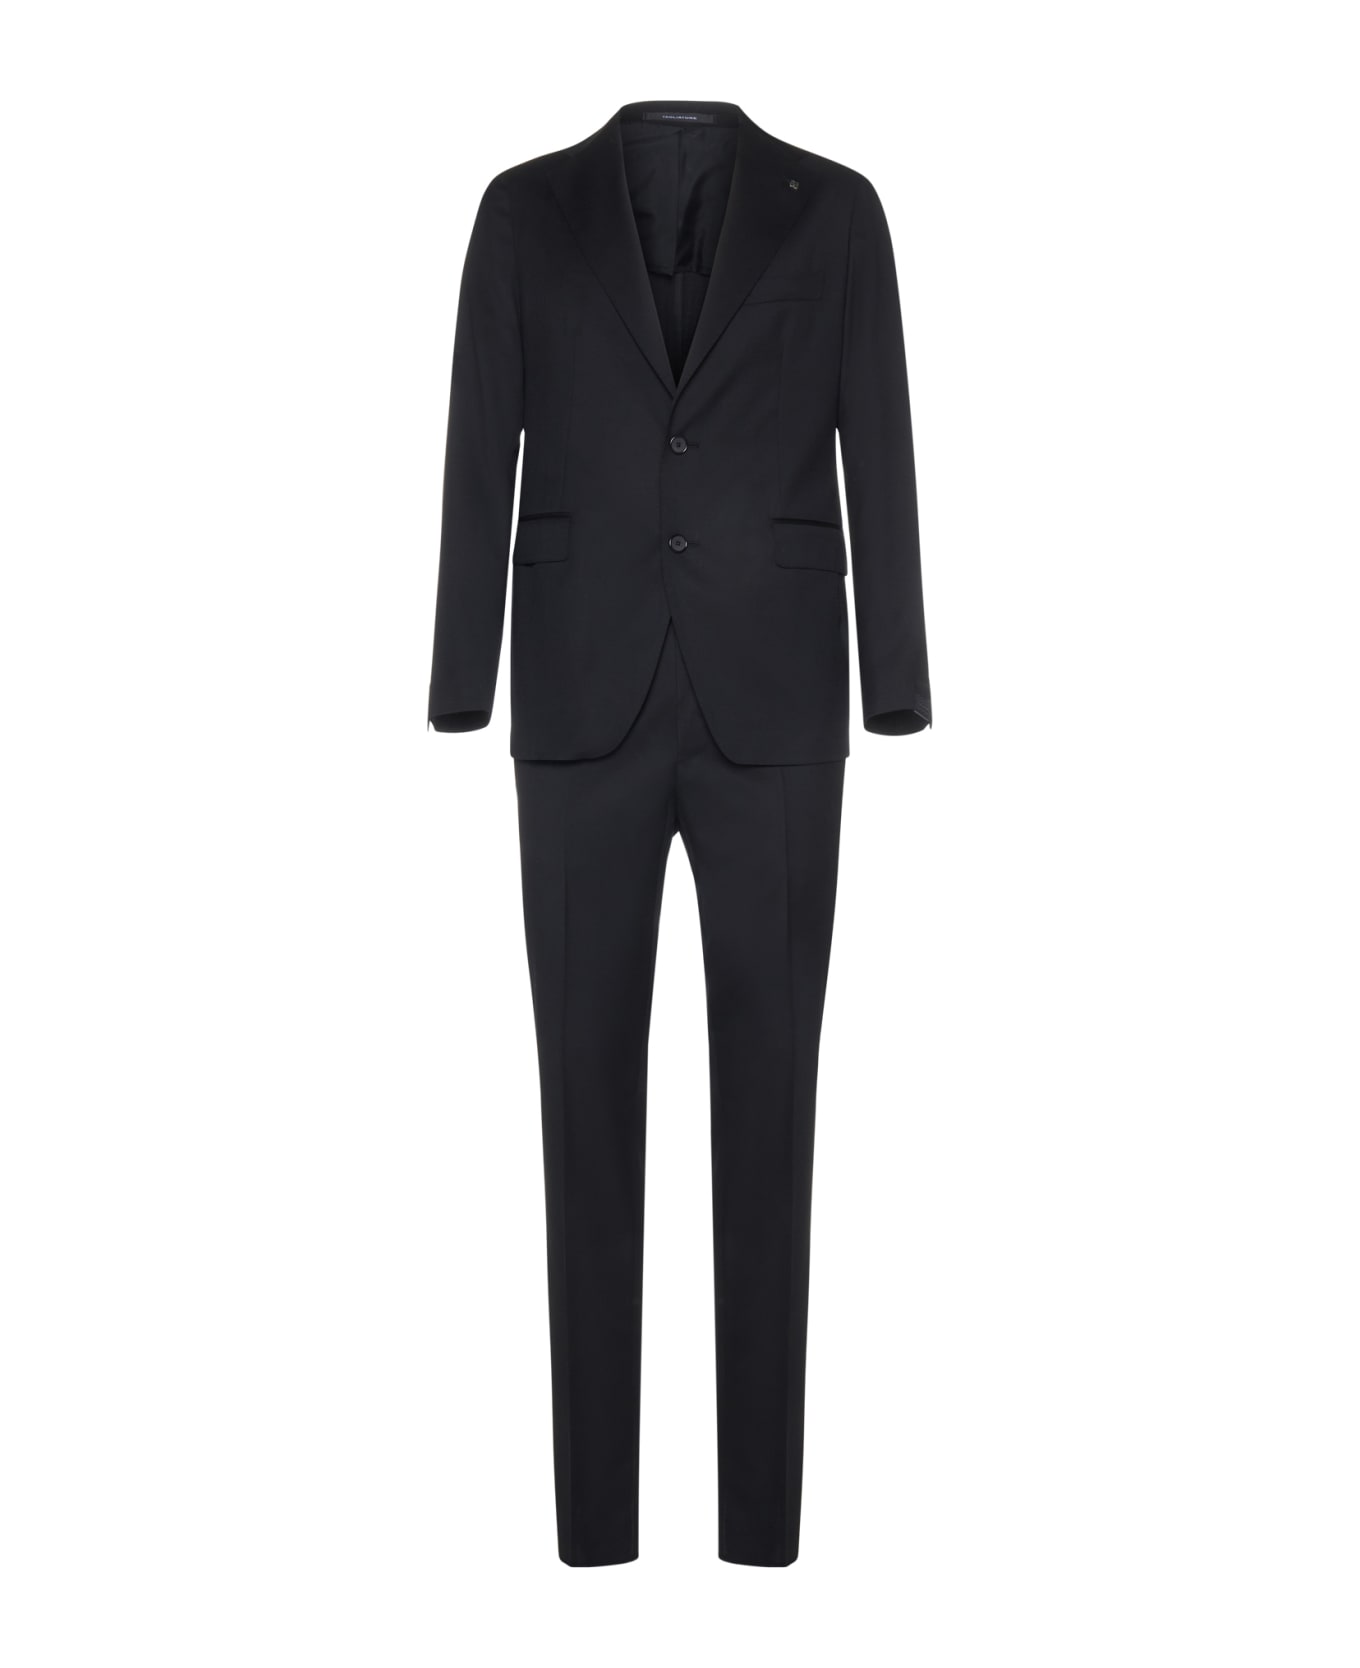 Tagliatore Suit - Nero スーツ